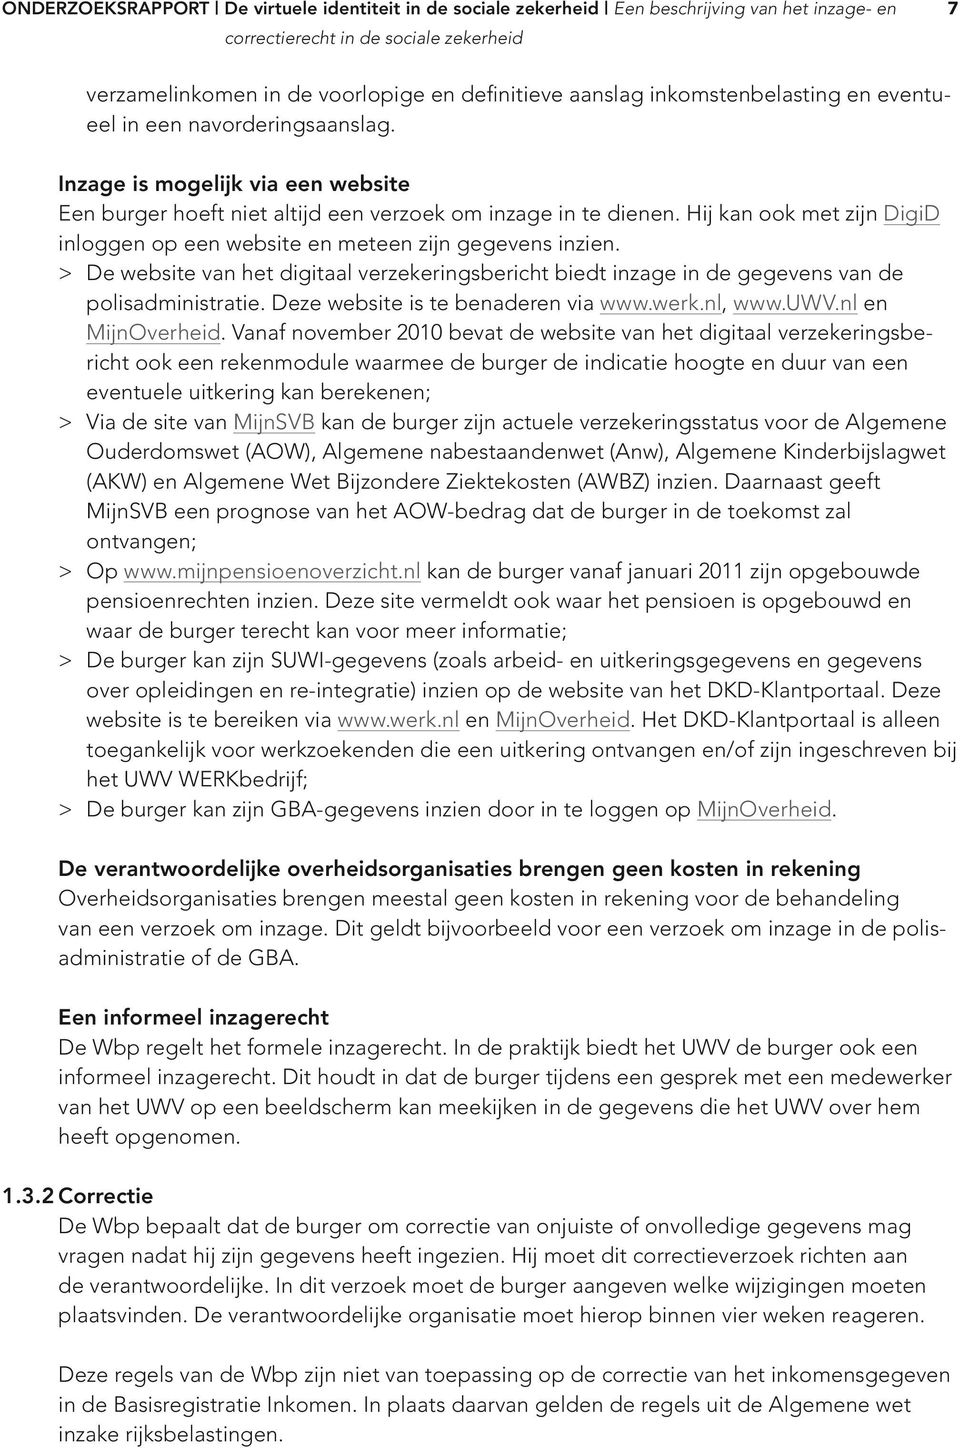 > De website van het digitaal verzekeringsbericht biedt inzage in de gegevens van de polisadministratie. Deze website is te benaderen via www.werk.nl, www.uwv.nl en MijnOverheid.